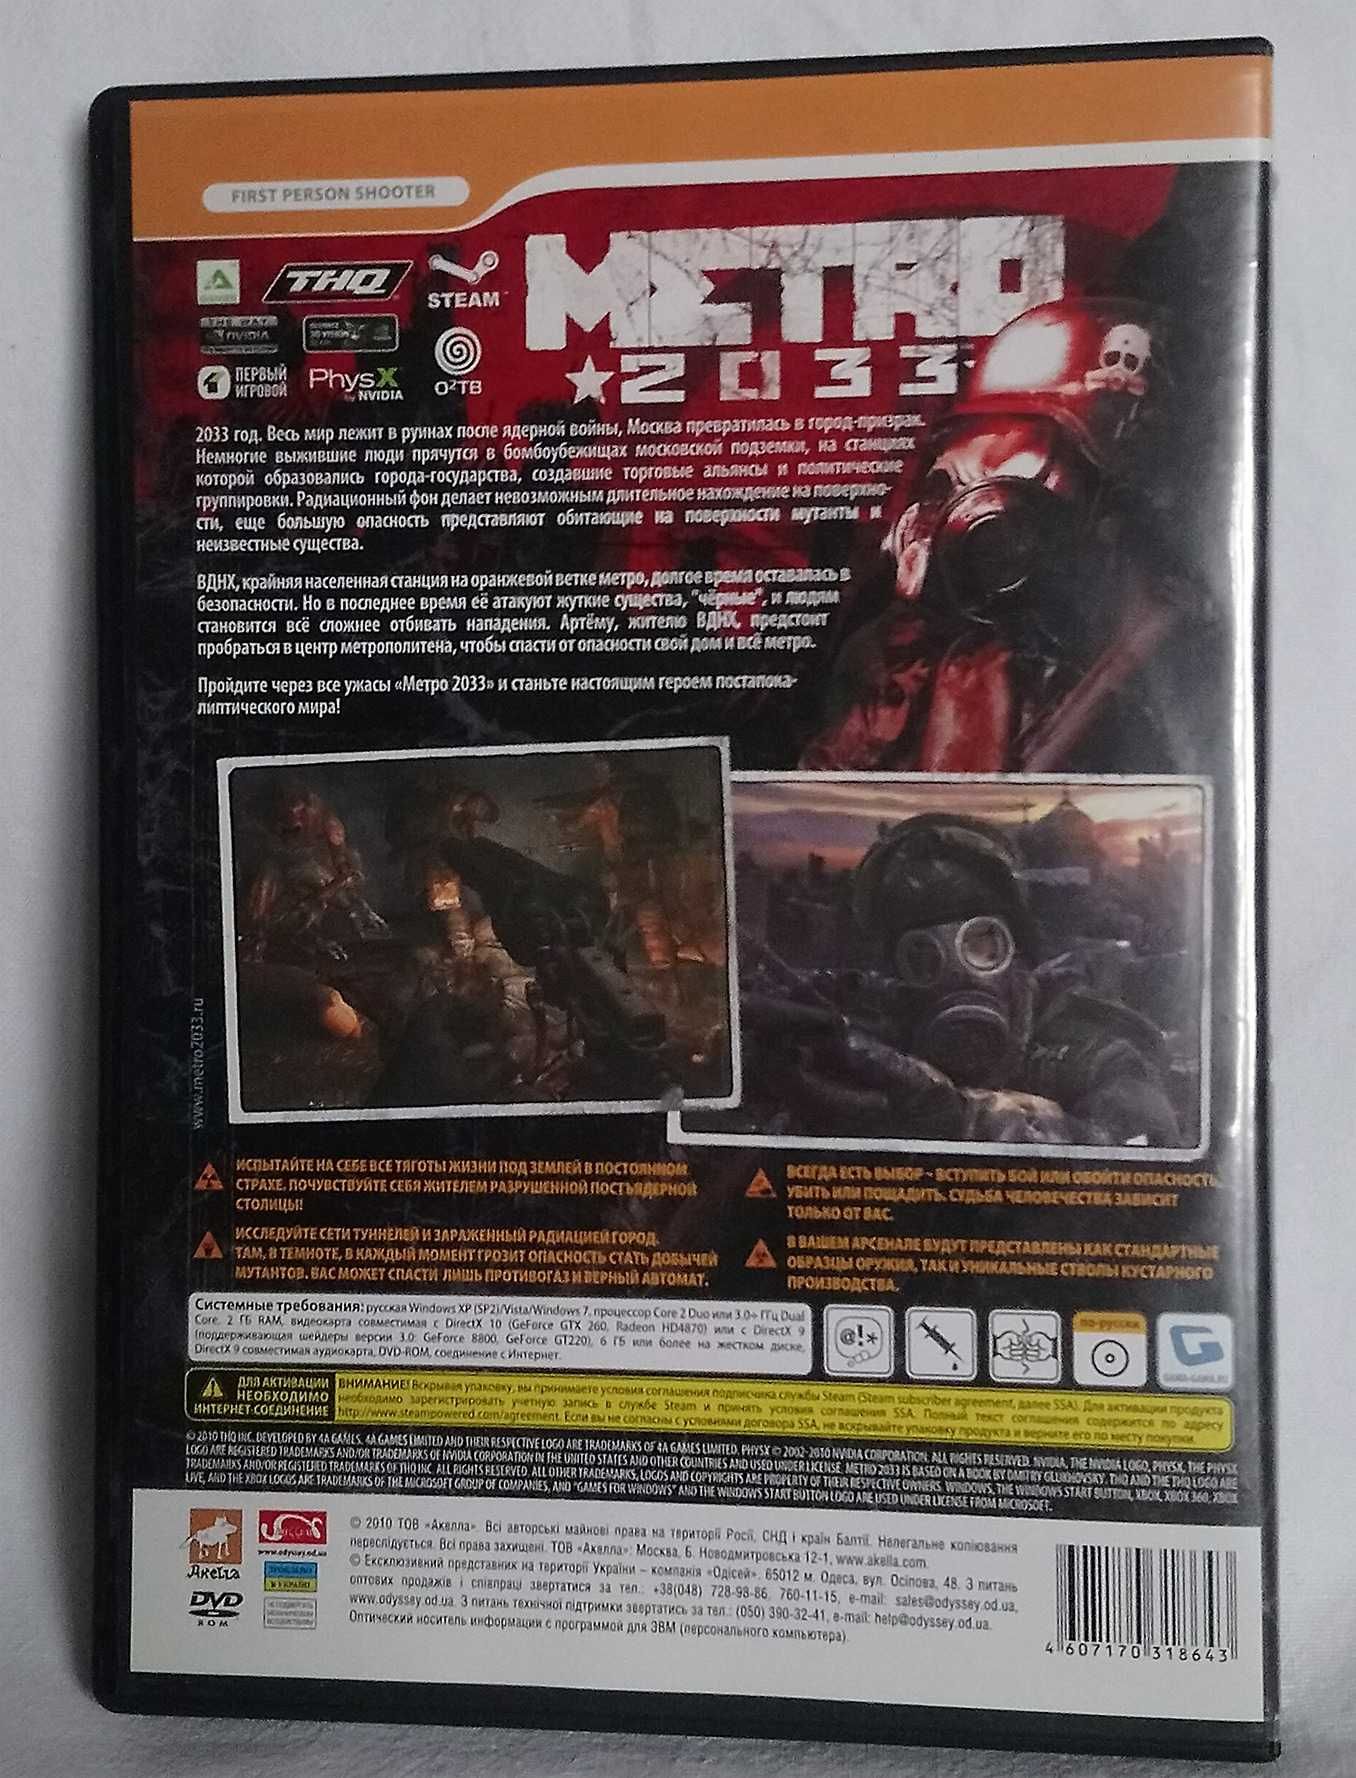 Гра МЕТРО 2033 DVD диск ПК \ PC METRO 2033